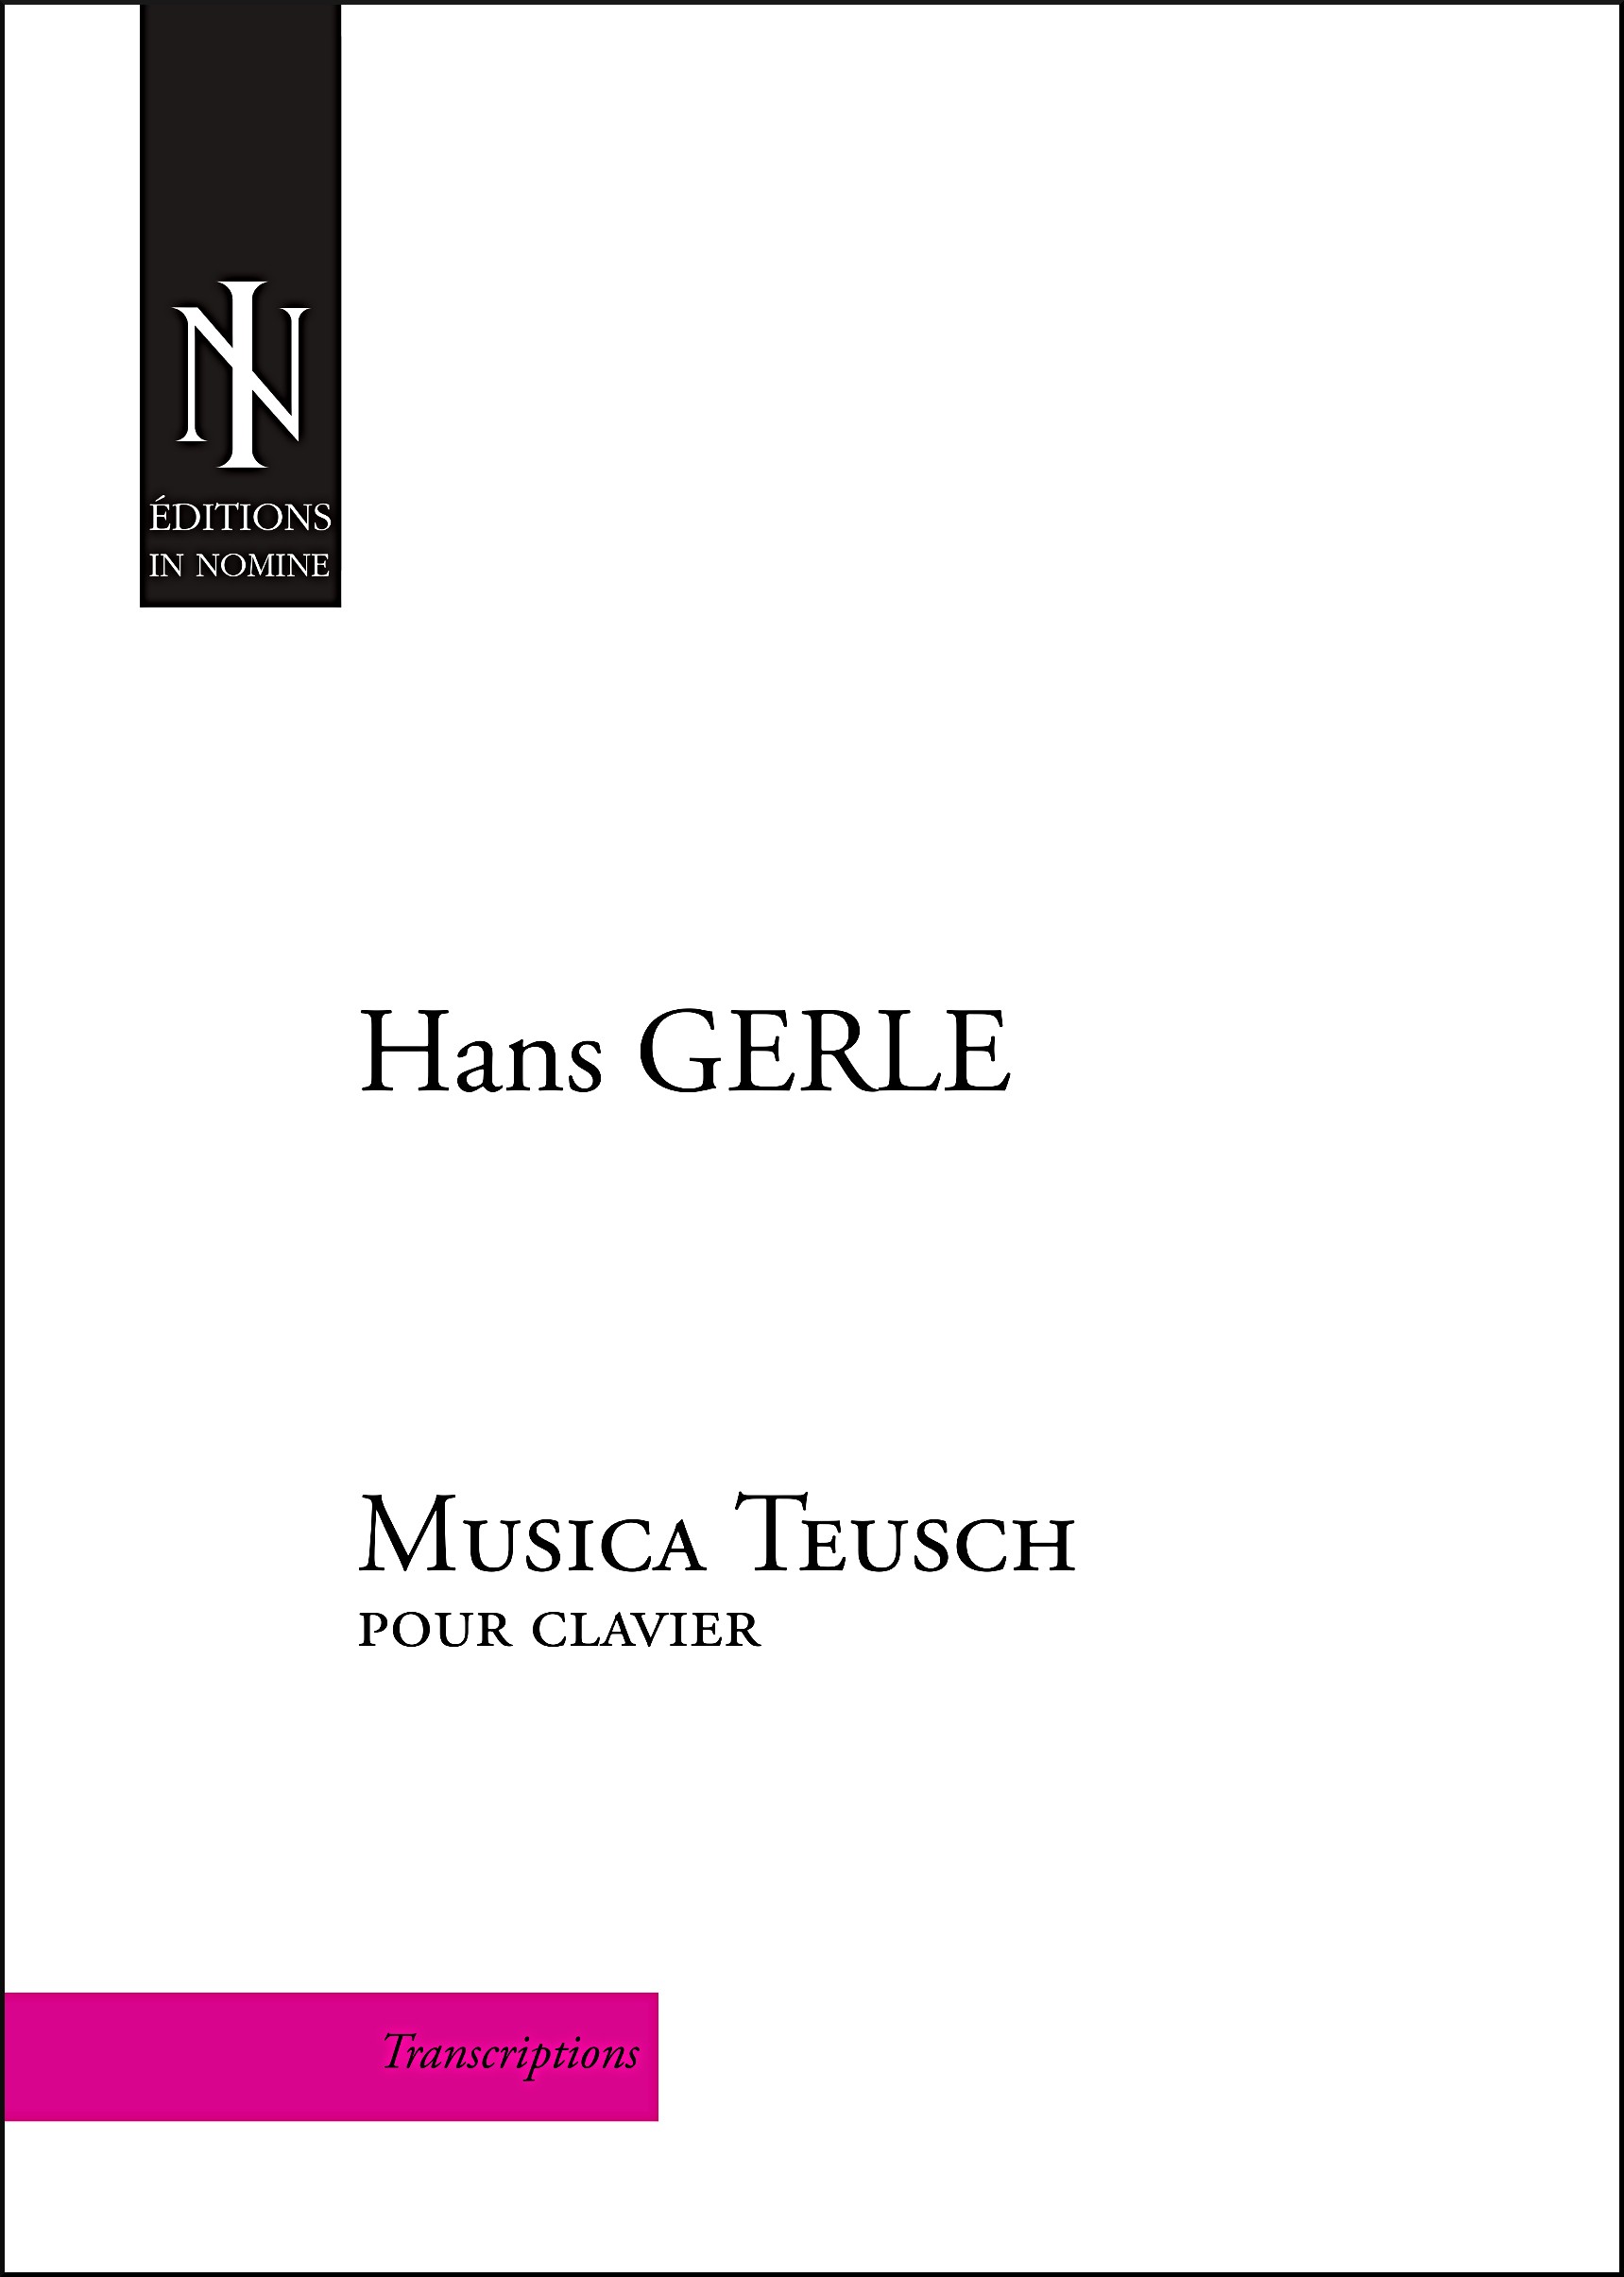 Musica Teusch (1532)